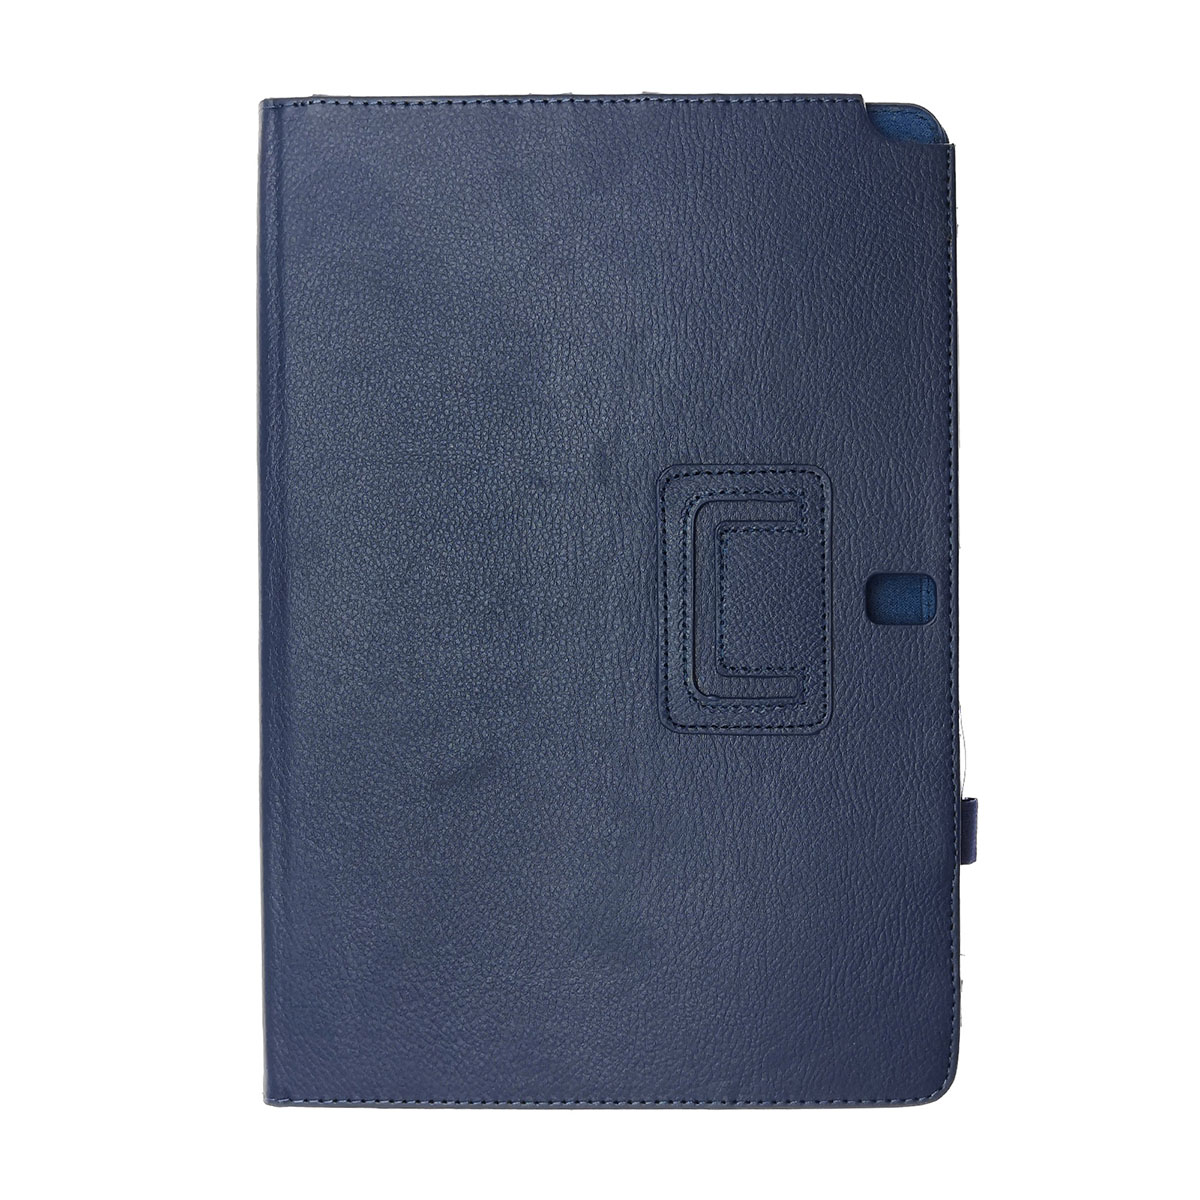 Чехол книжка для SAMSUNG Galaxy Note Pro 12.2 (SM-P900), экокожа, цвет синий.